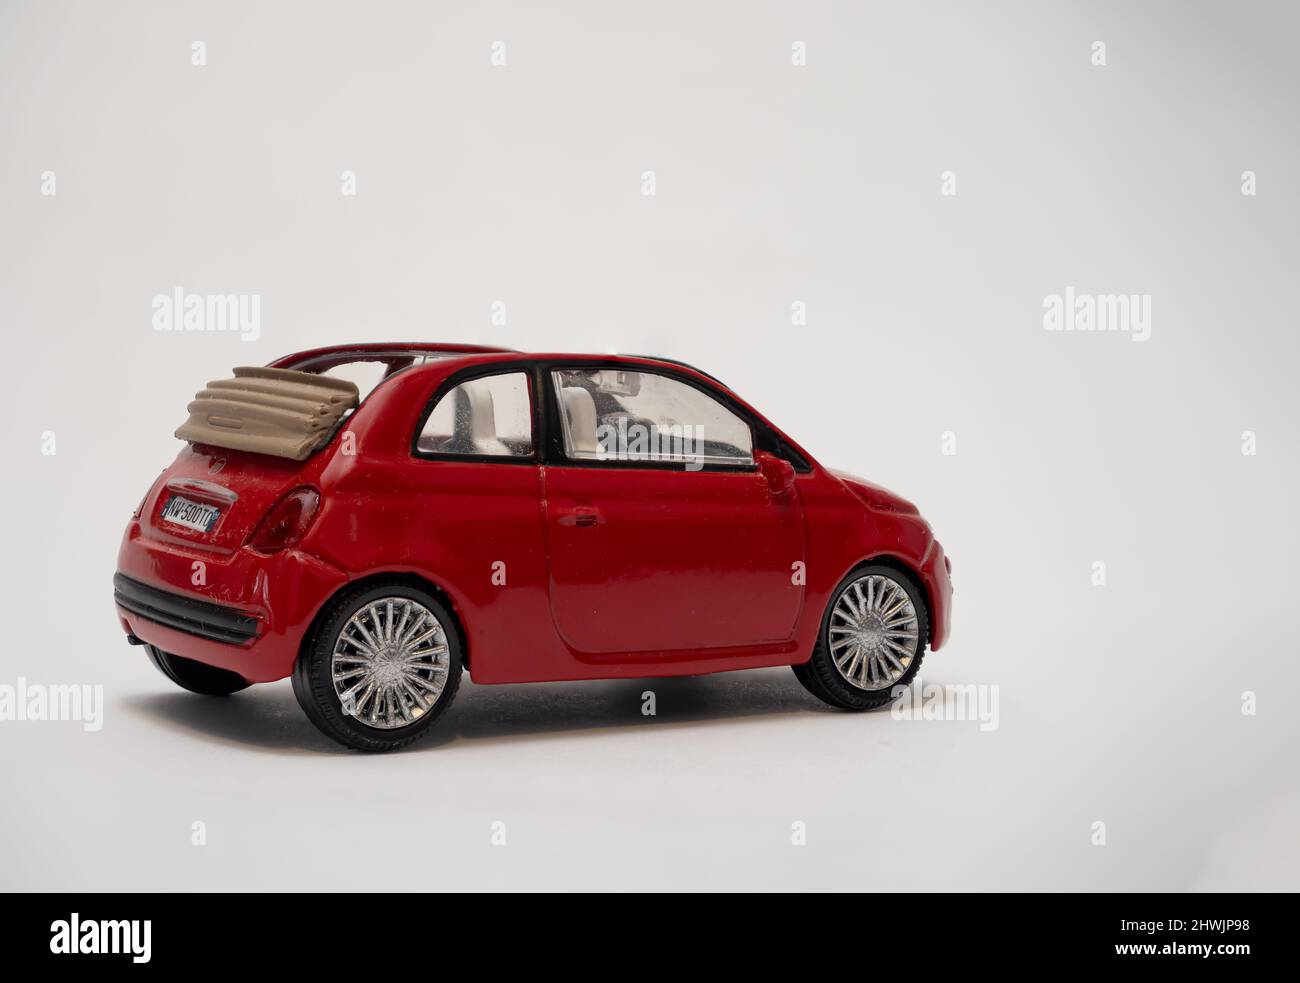 Vue arrière et latérale d'une Fiat 500 rouge 2 portes cabriolet à l'échelle  avec capot rabattable Photo Stock - Alamy